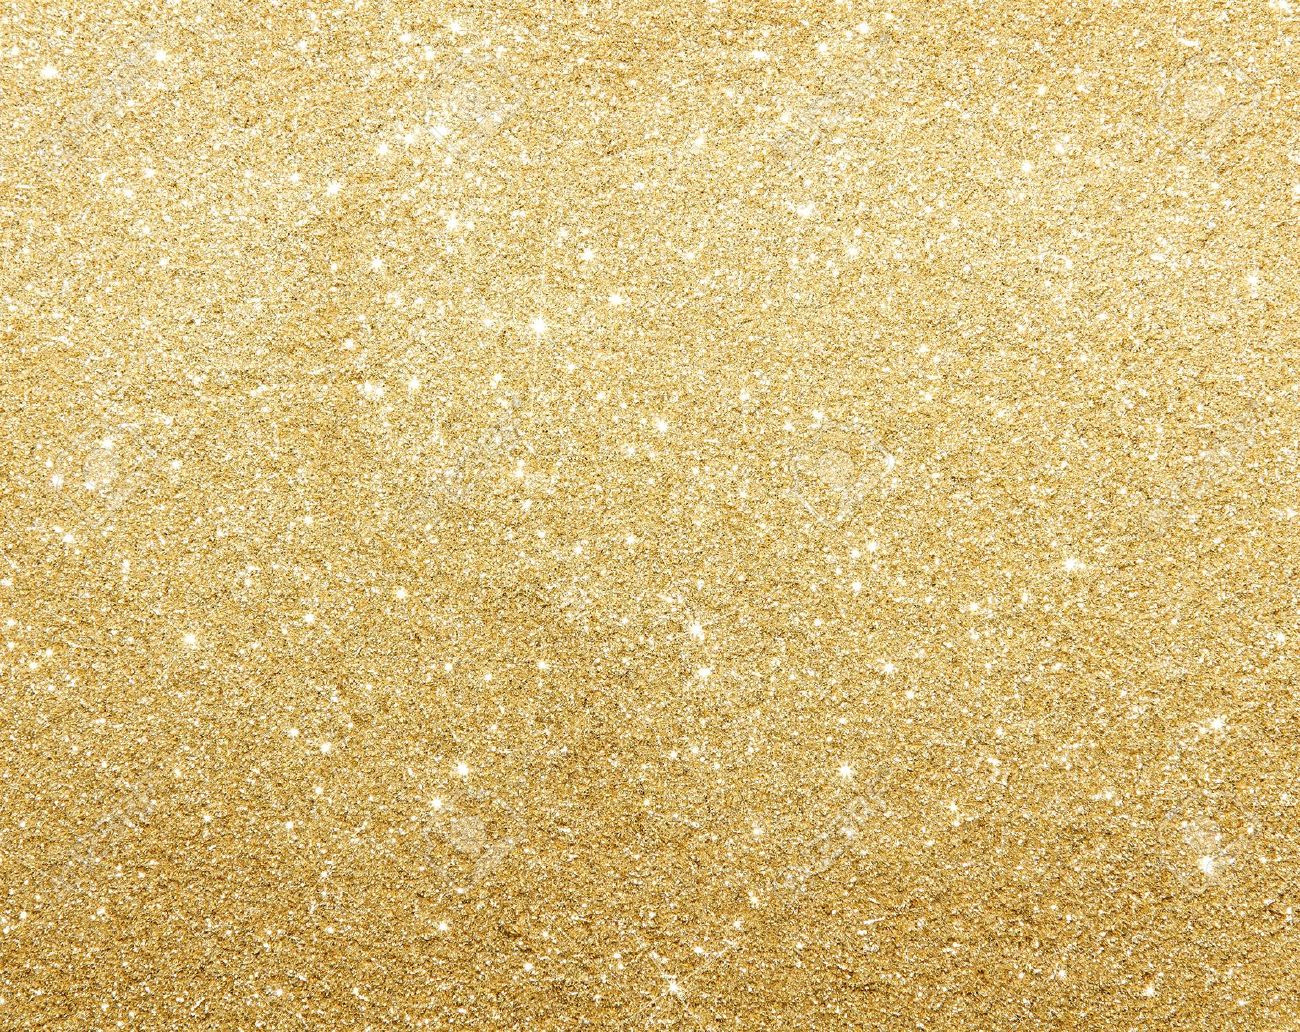 Gold Glitter Wallpaper Light Background